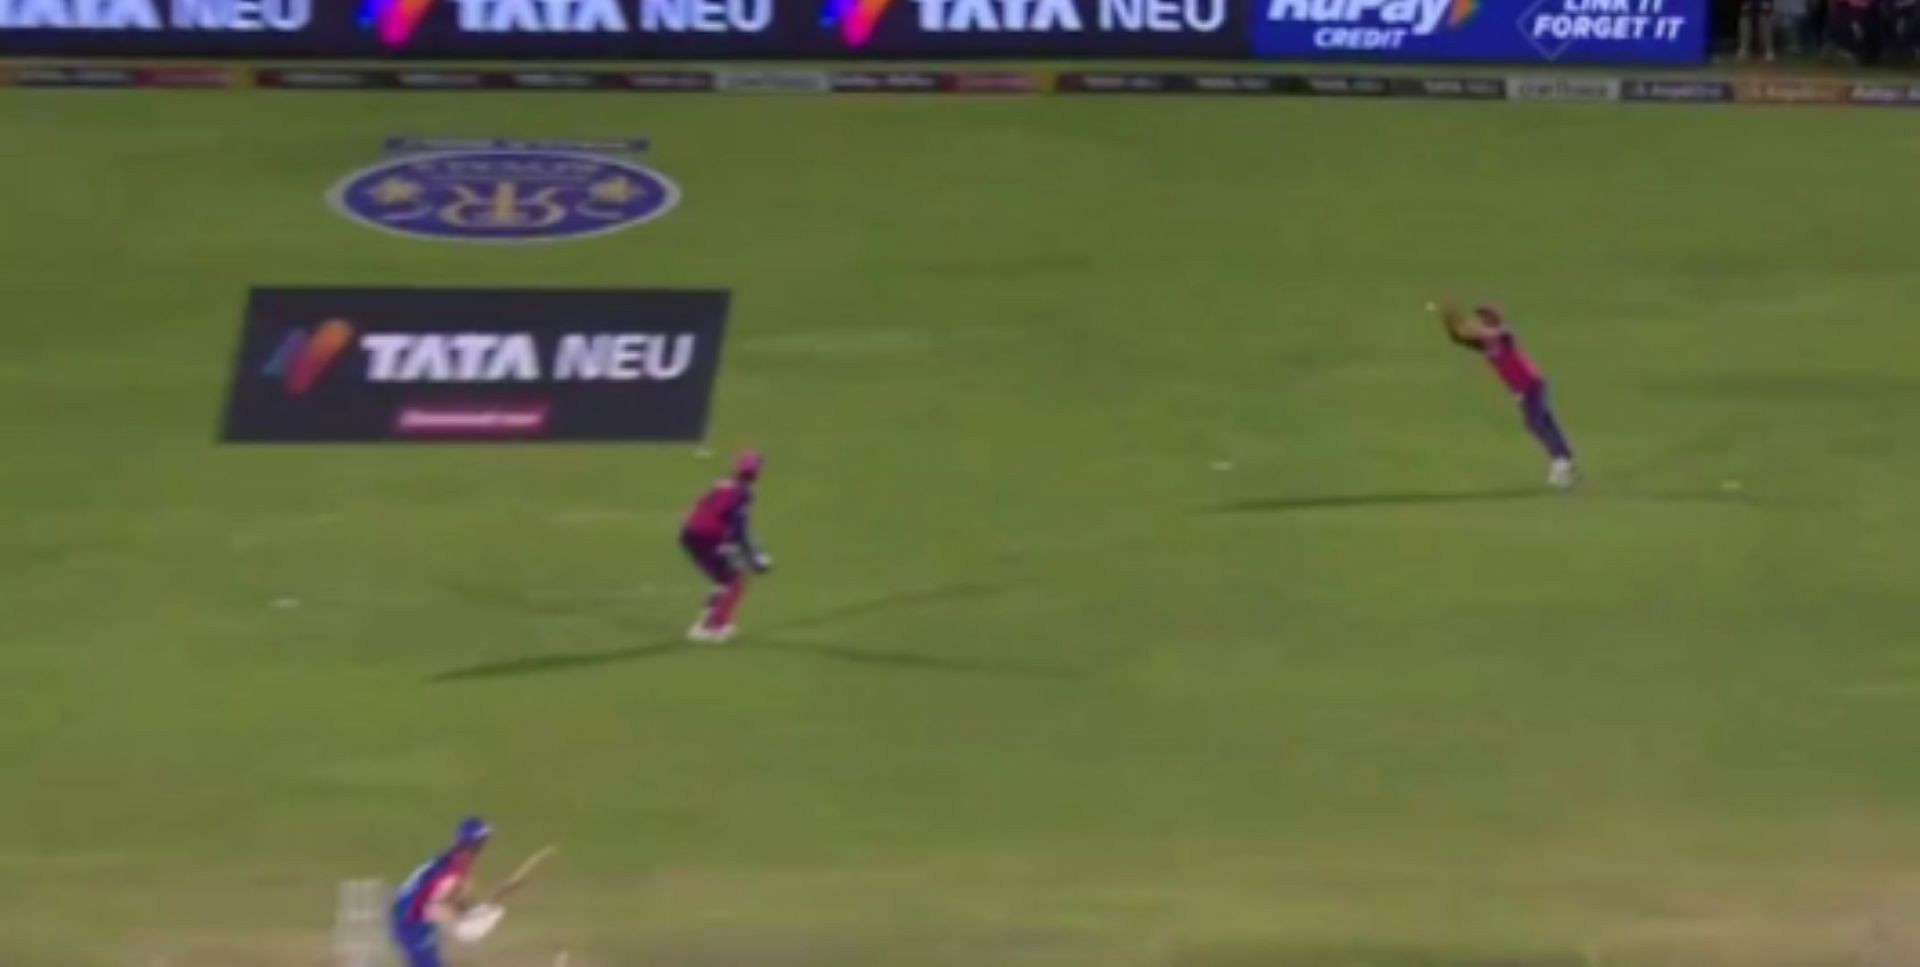 Sandeep flung himself to pluck a sensational catch [Credit: IPL Twitter handle]